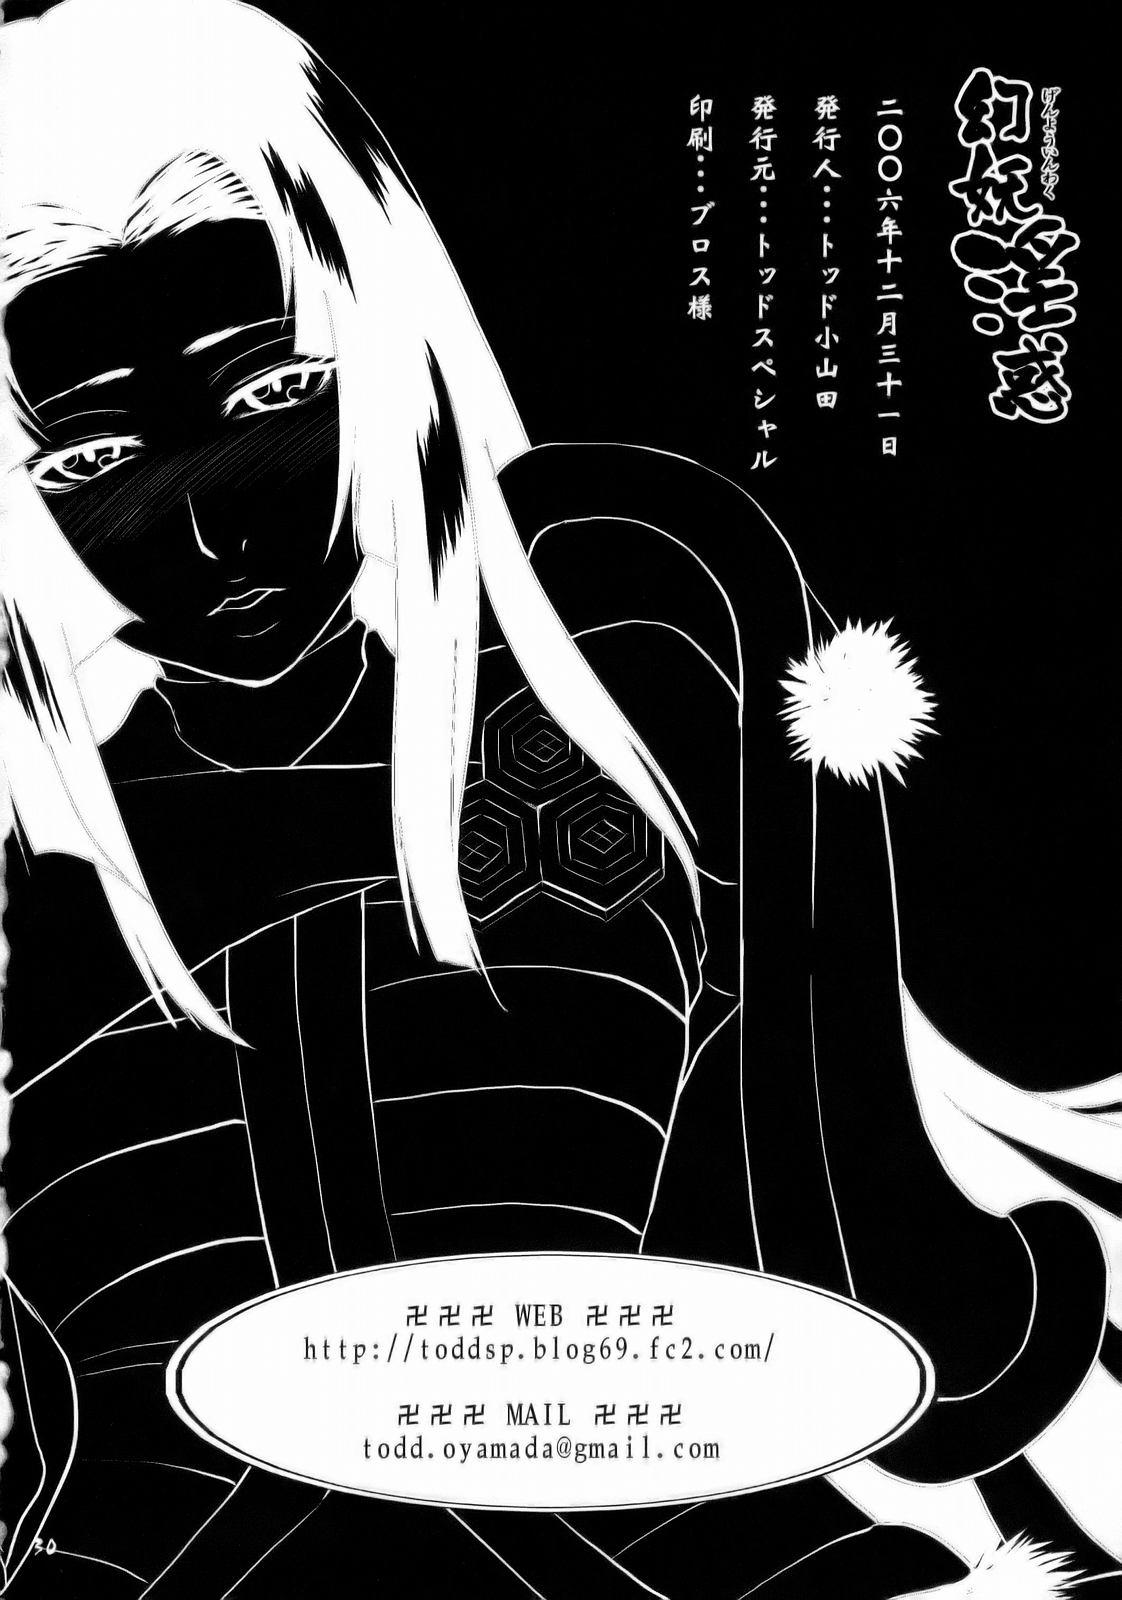 Off Genyou Inwaku - Sengoku basara Adult - Page 29